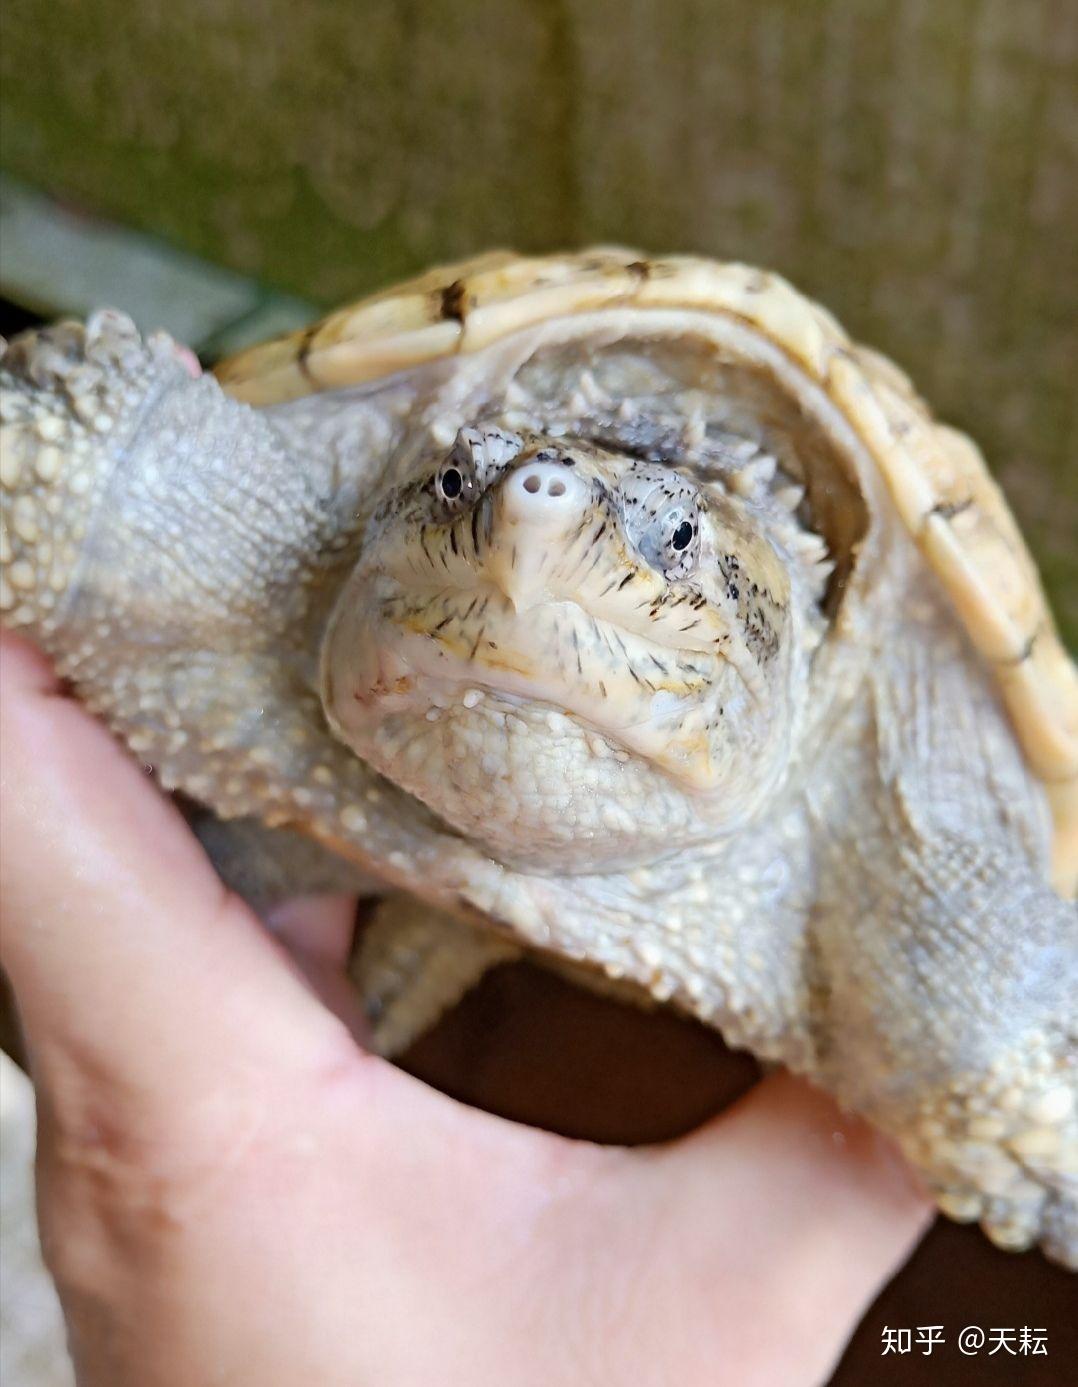 金黄壳的鳄龟多少钱也不知道是什么品种